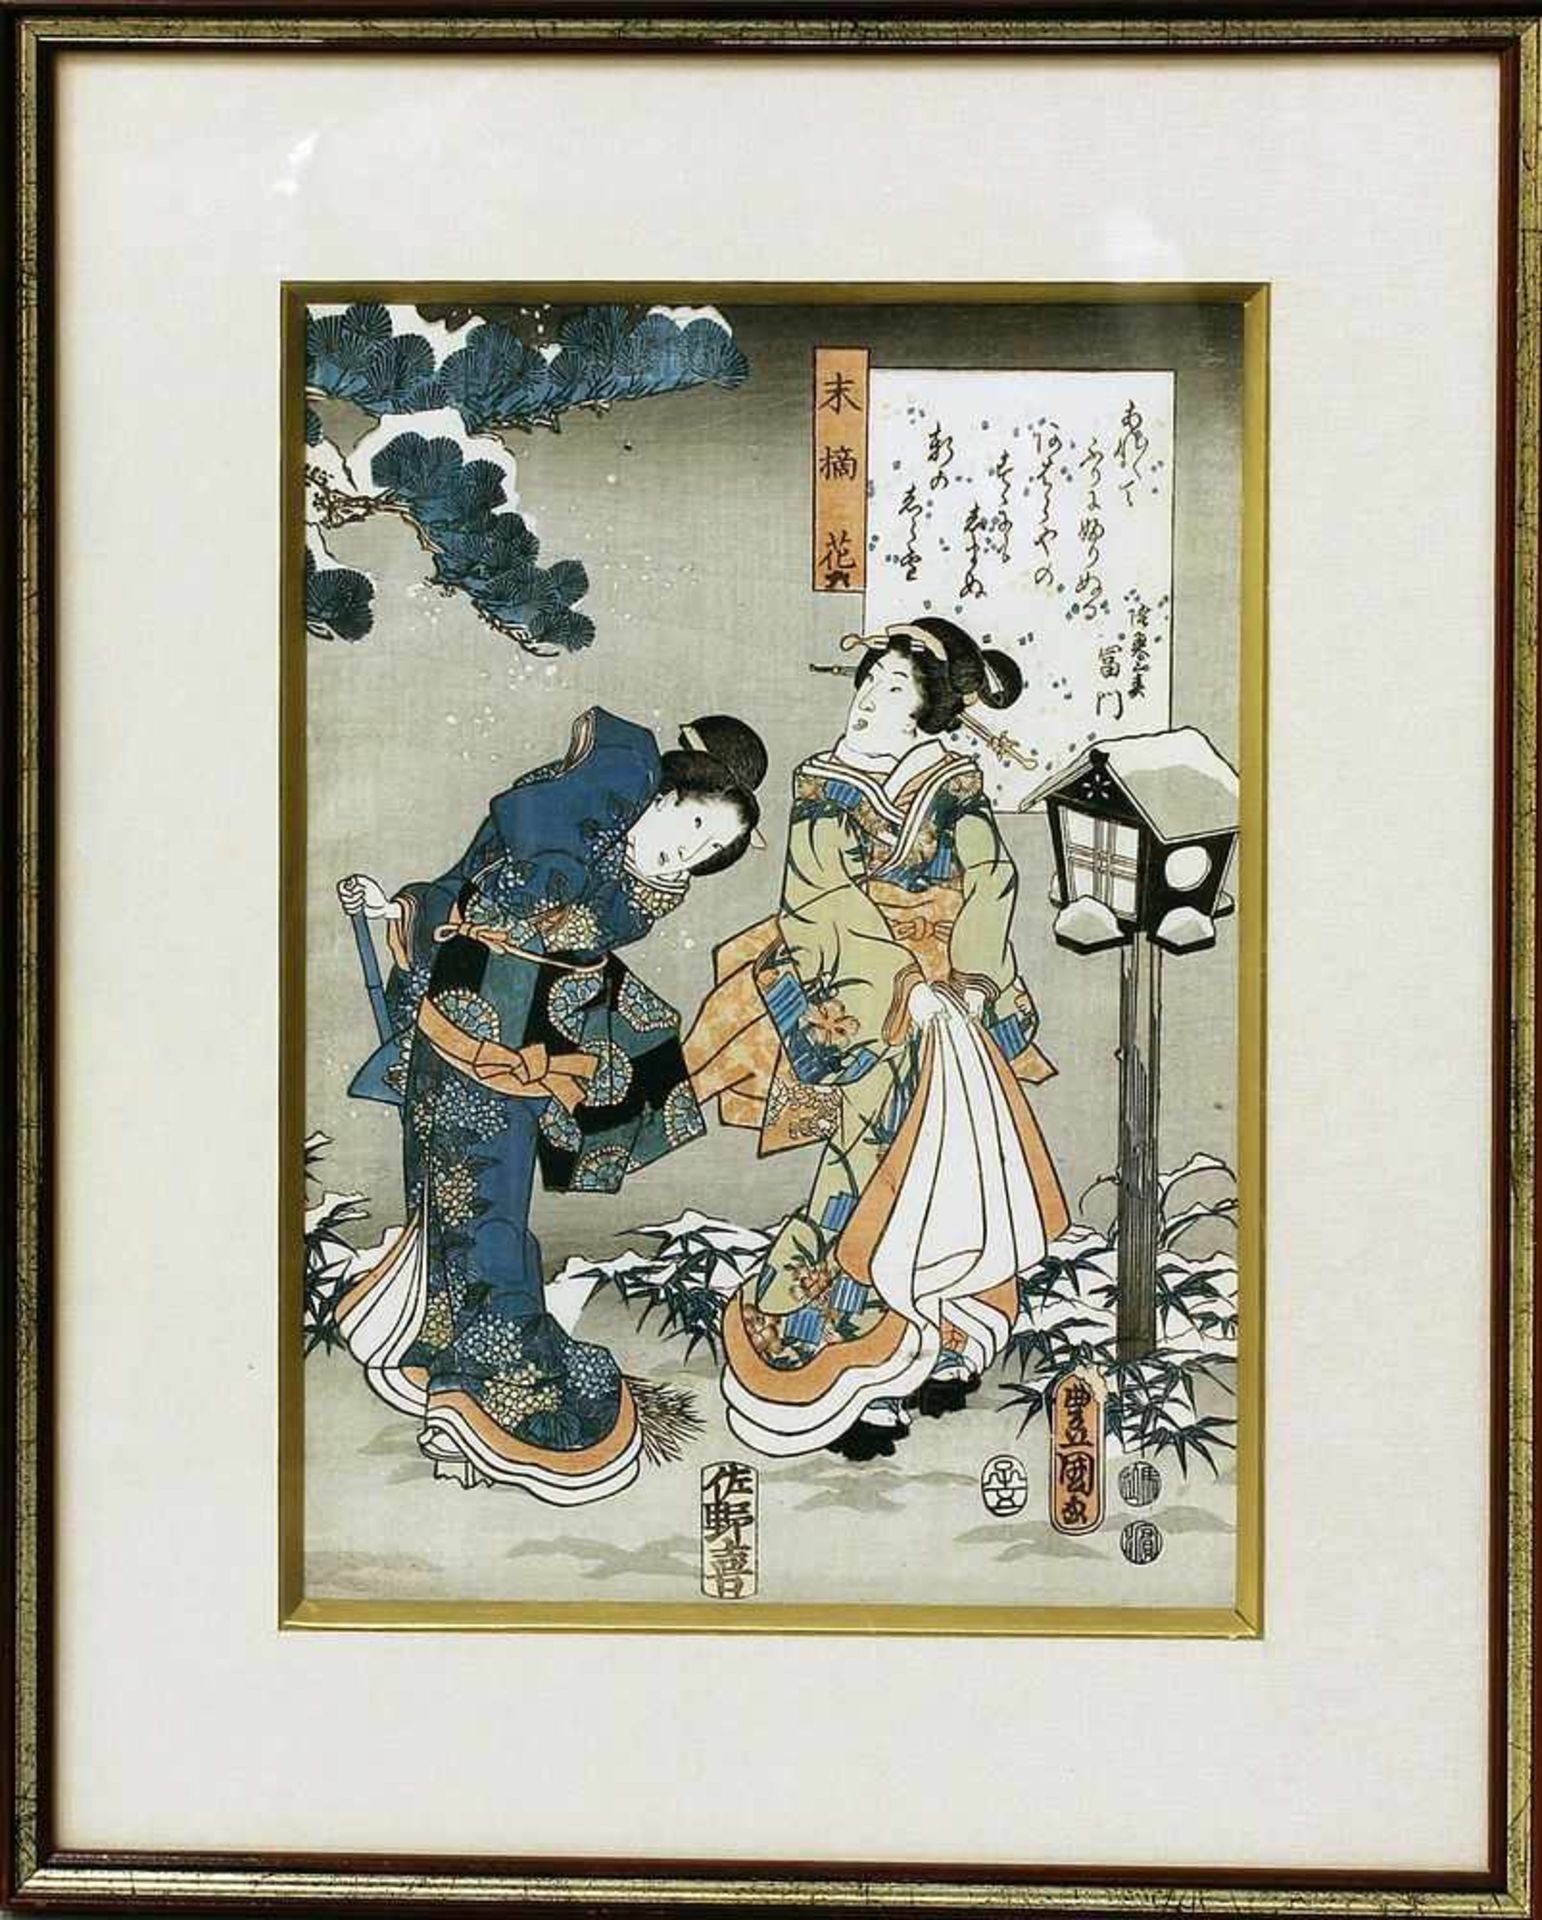 Japanischer Holzschnitt (wohl um 1852)Darstellung aus "Tales of Genji", so verso auf Etikett bez.